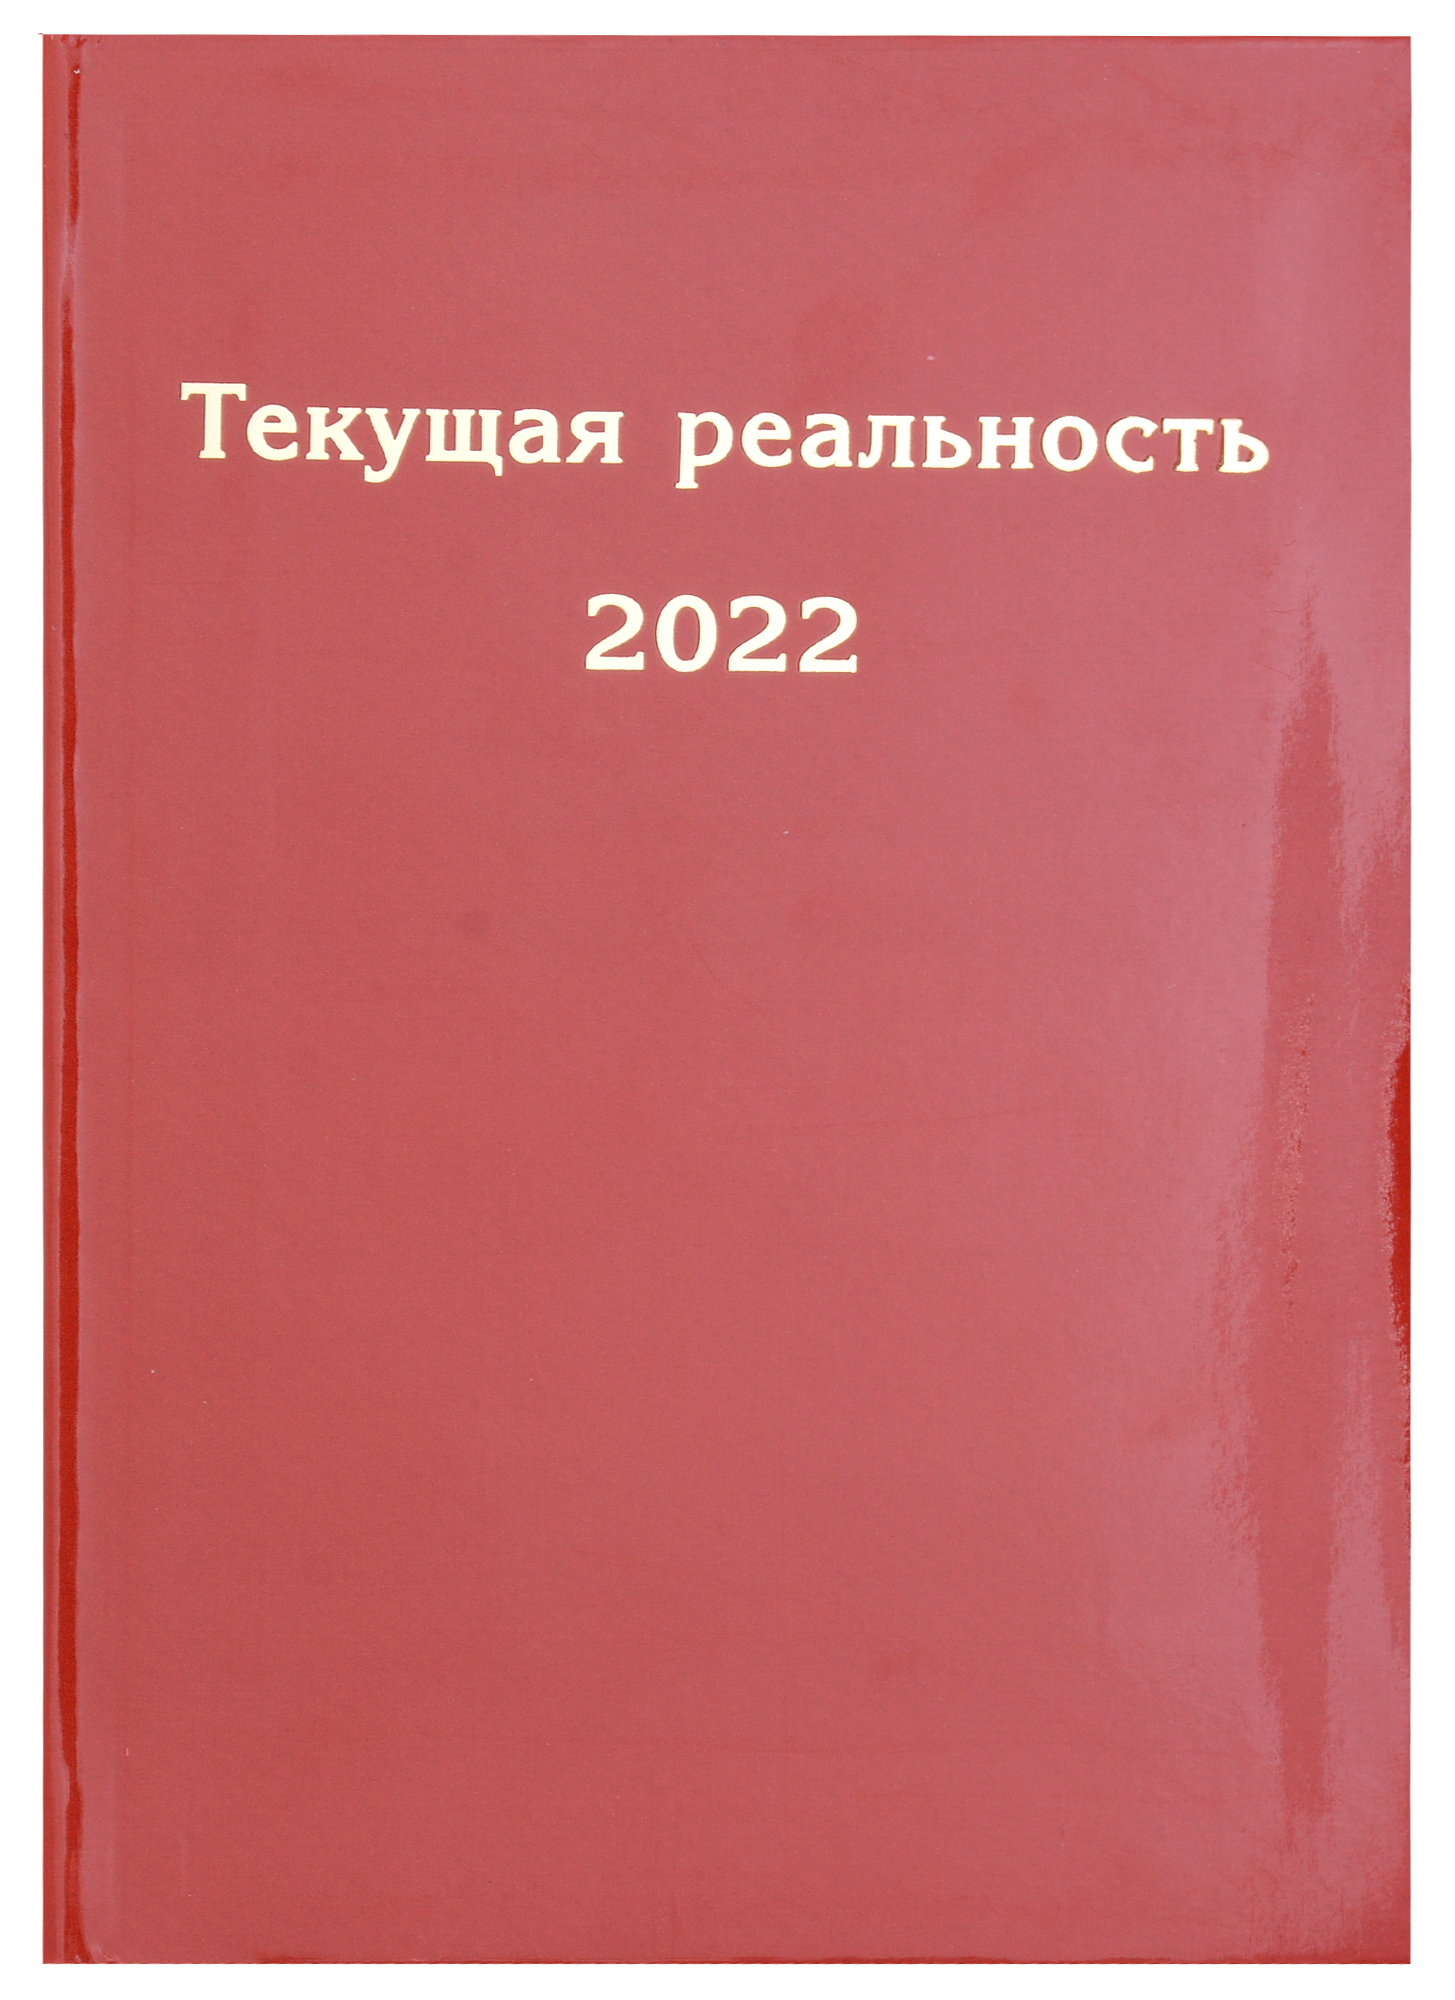 текущая реальность 2022 избранная хронология Текущая реальность 2022. Избранная хронология